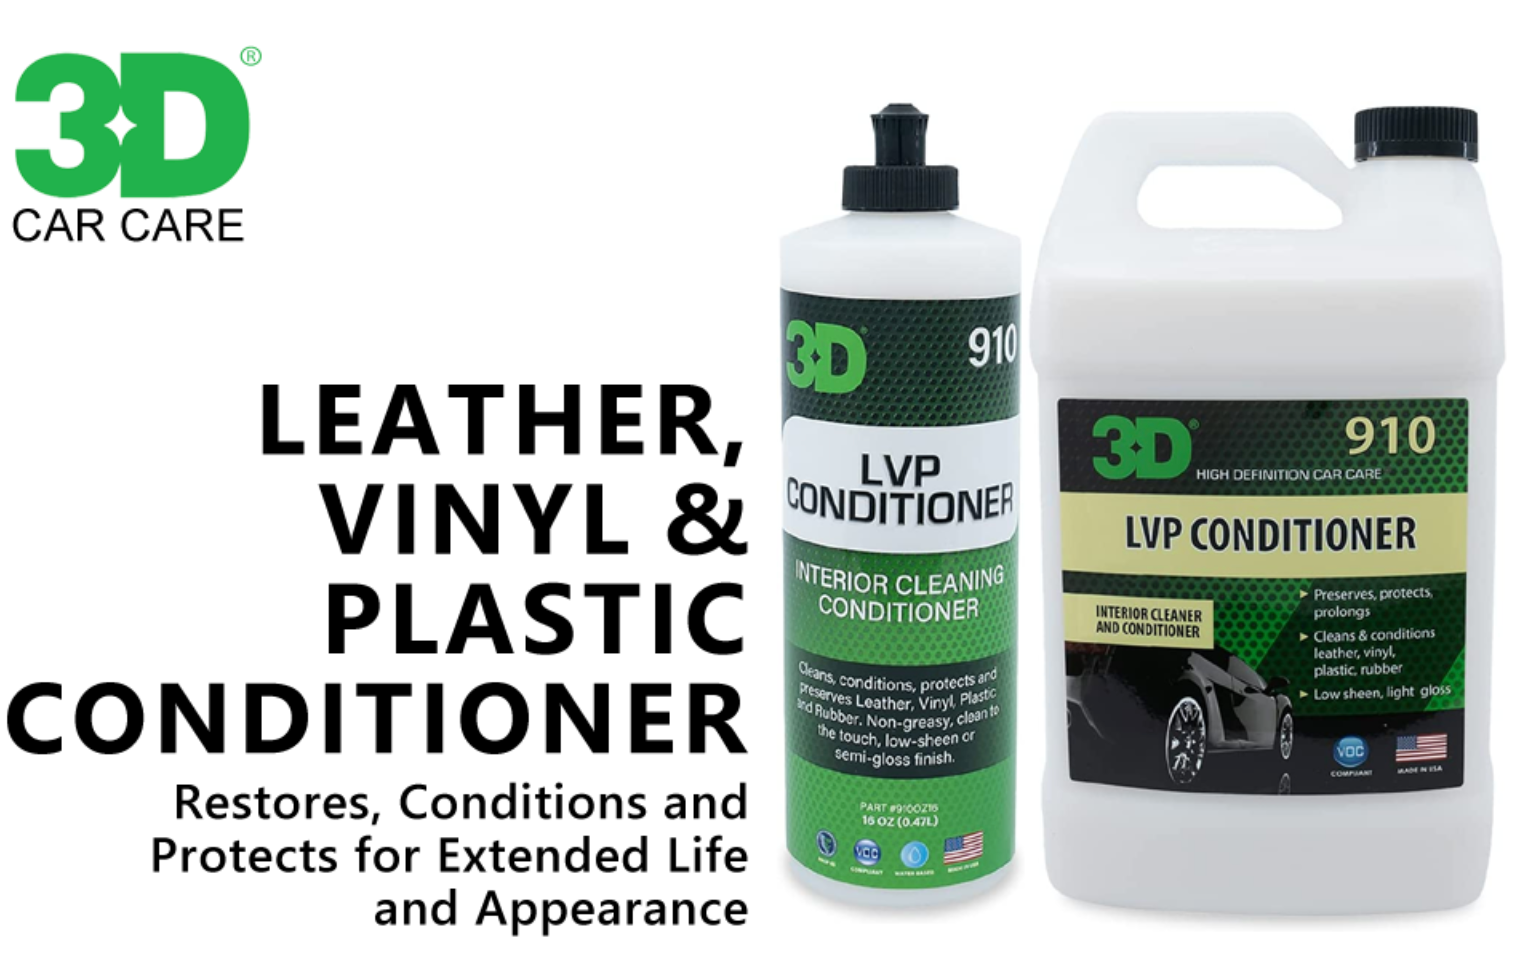 3D Leather, Vinyl & Plastic Conditioner